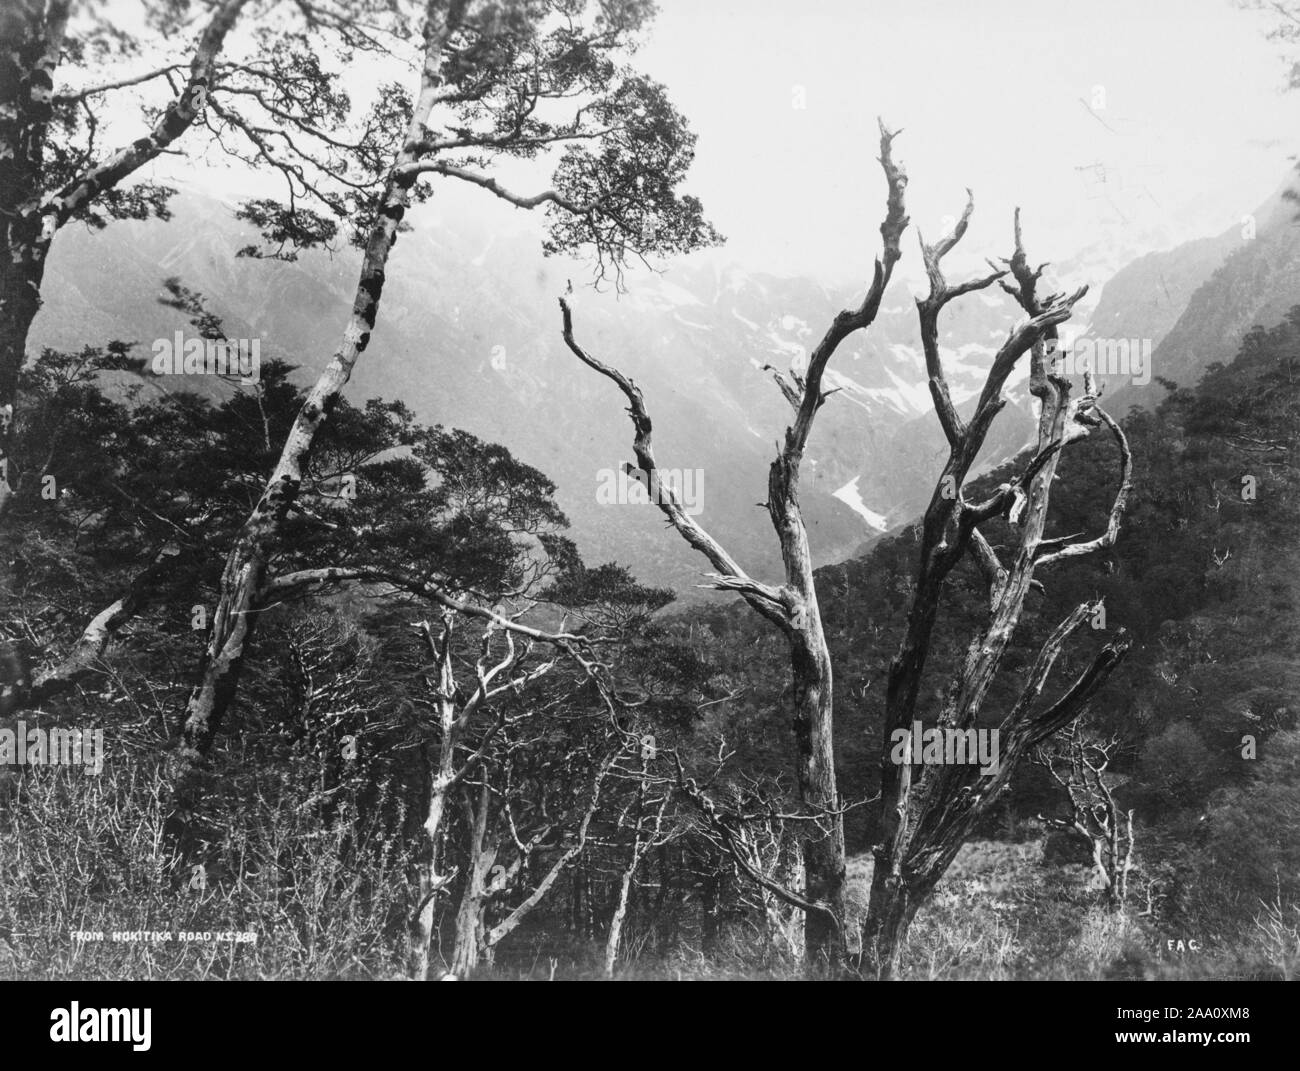 Paysage noir et blanc photographie de la vue d'un espace boisé montagneux pris de Hokitika Road, dans l'île du Sud, Nouvelle-Zélande, par le photographe Frank Coxhead, 1885. À partir de la Bibliothèque publique de New York. () Banque D'Images